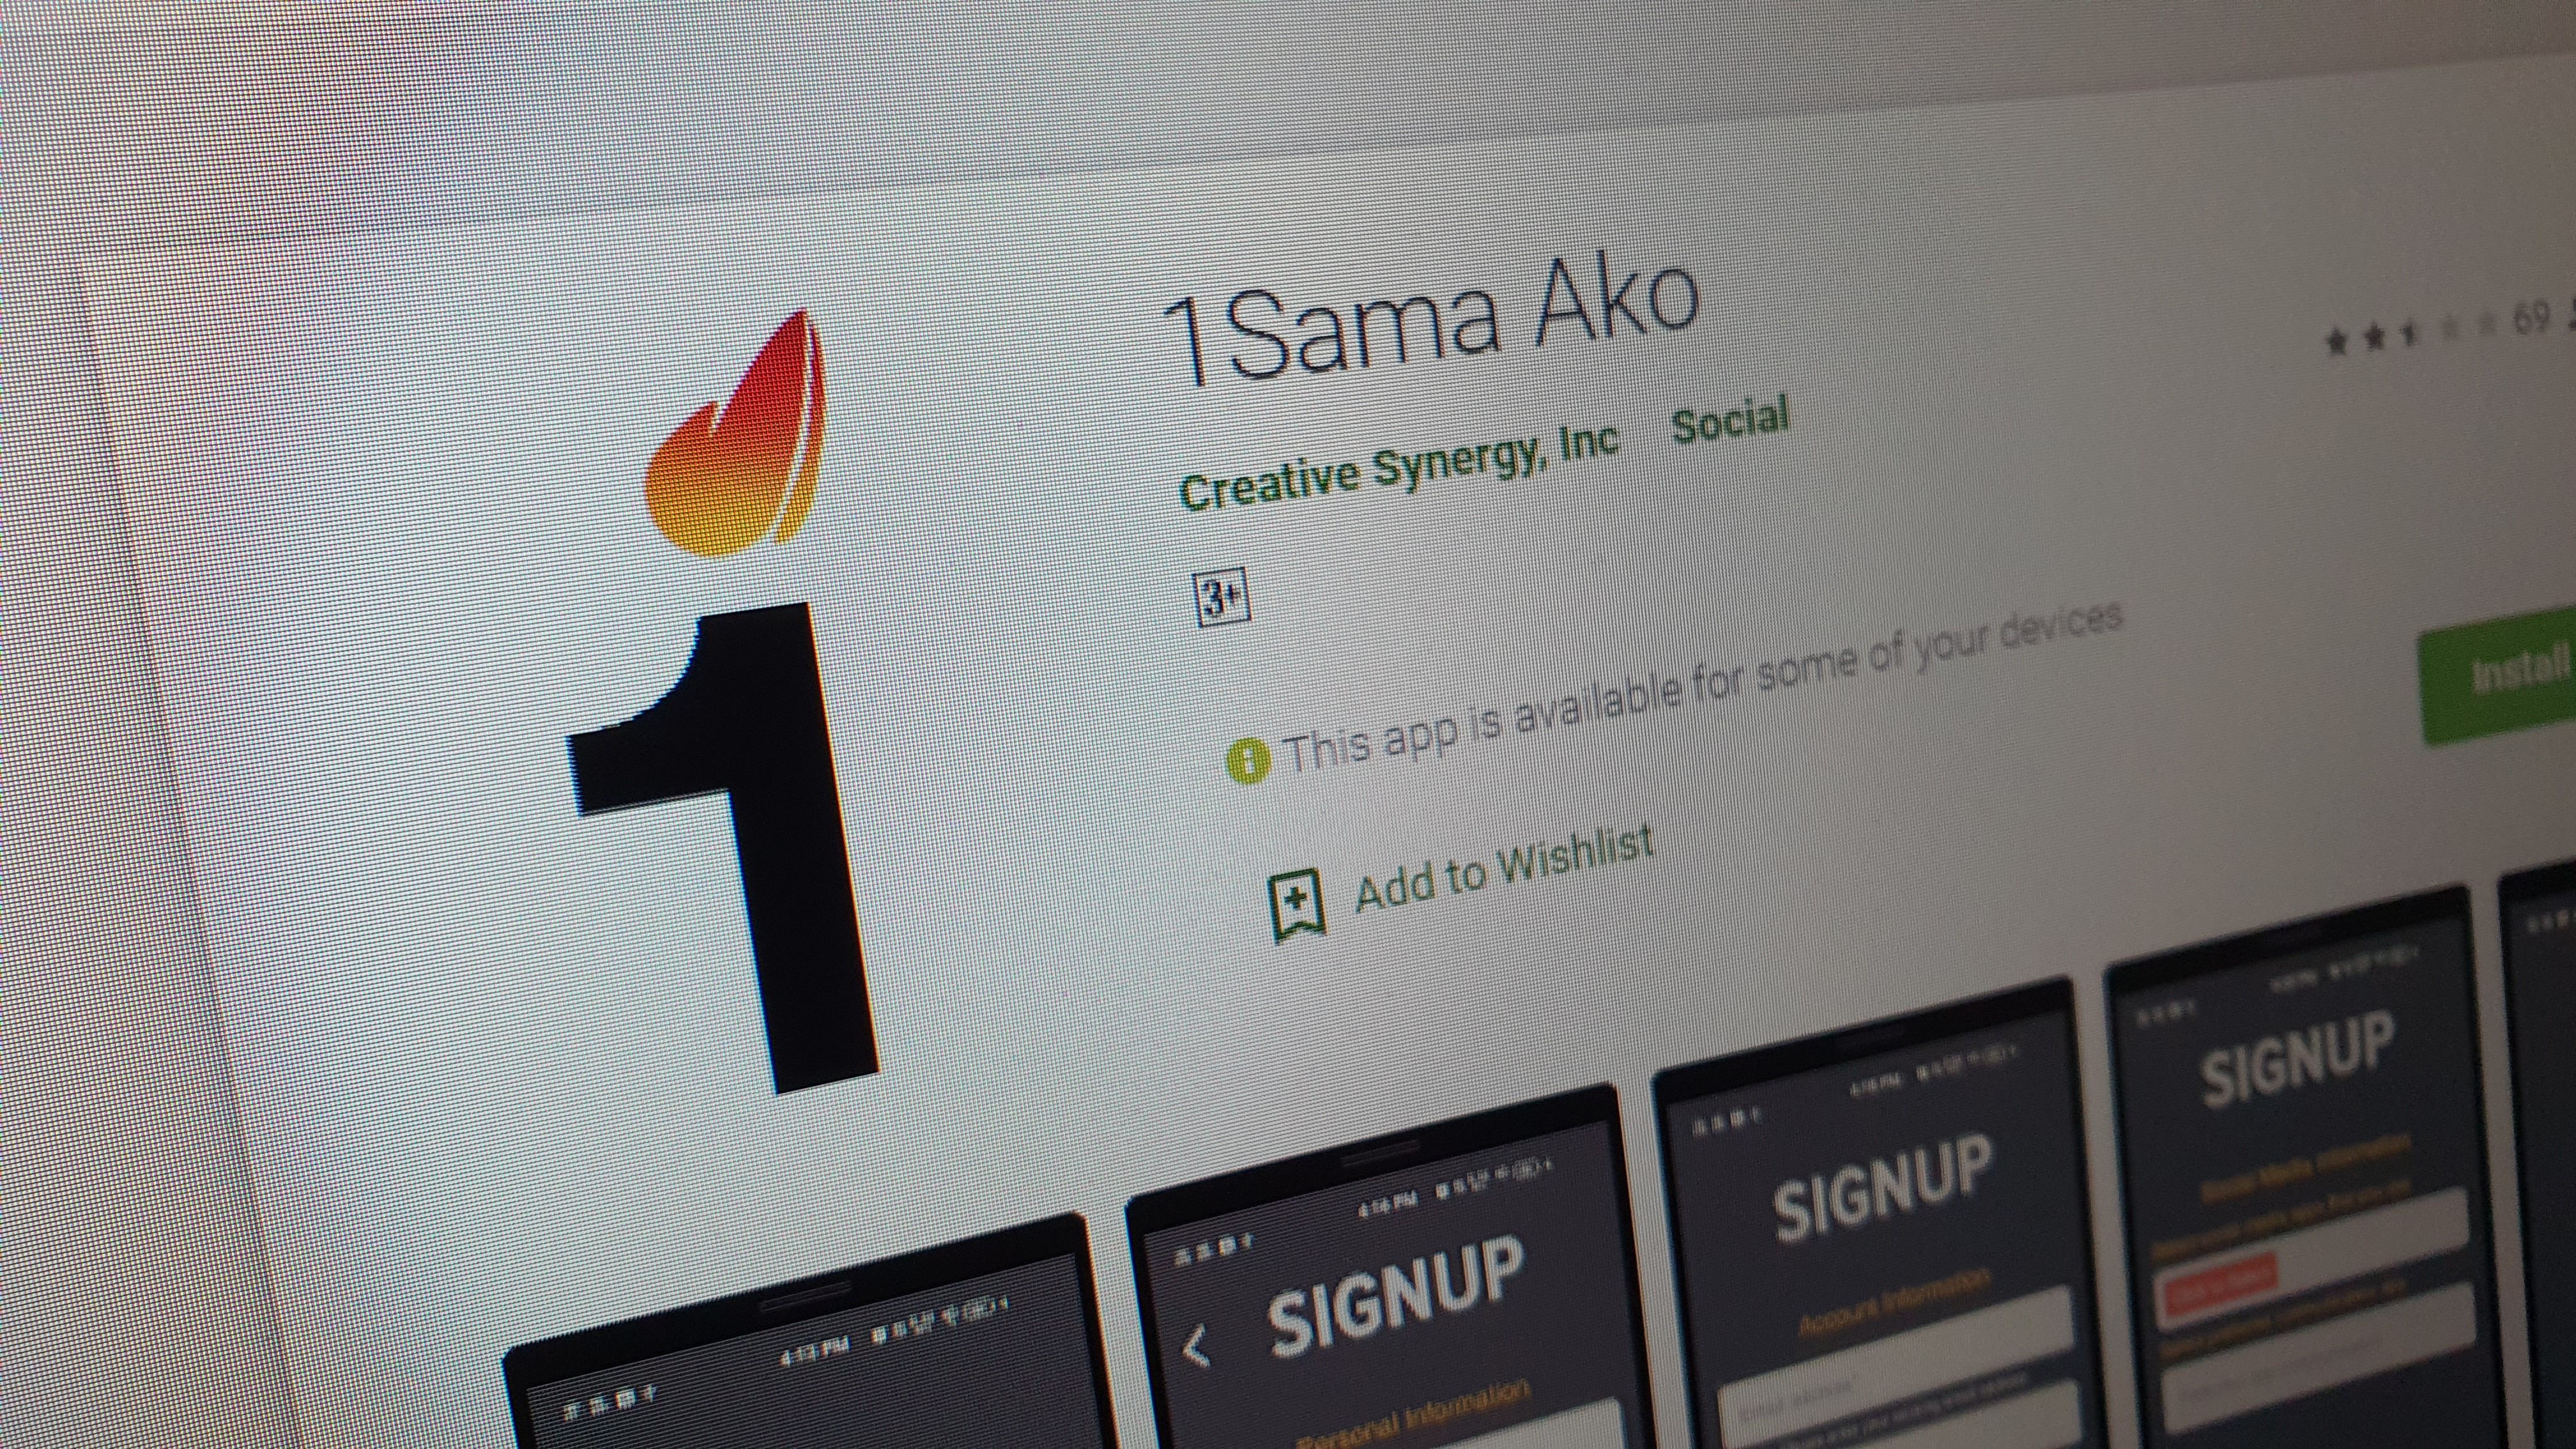 1Sambayan volunteer app 1Sama Ako hit by data breach